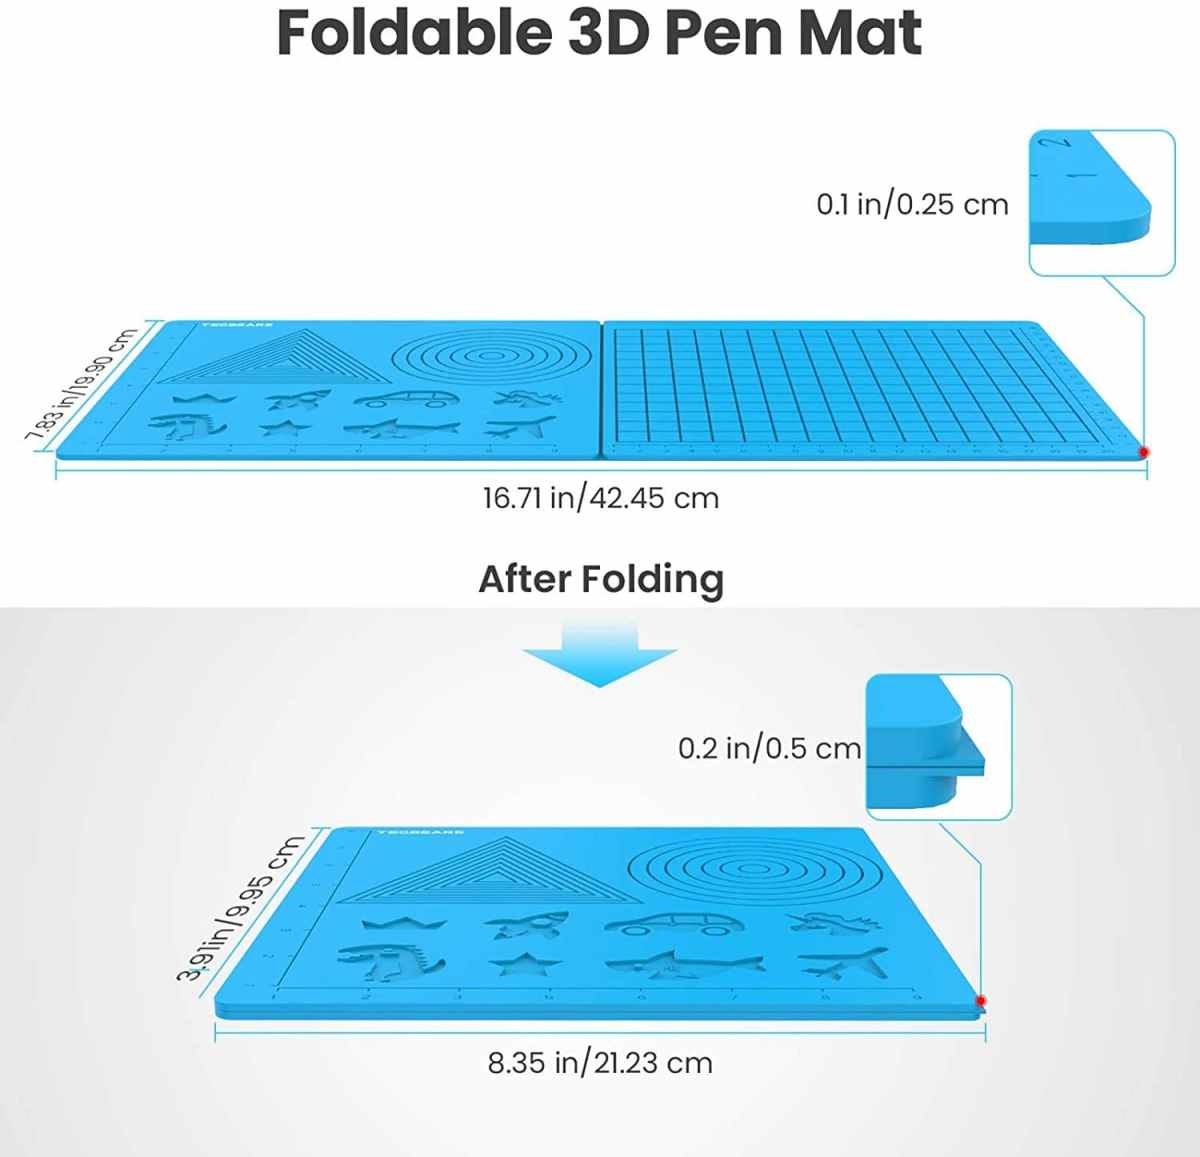 3D pen play mat